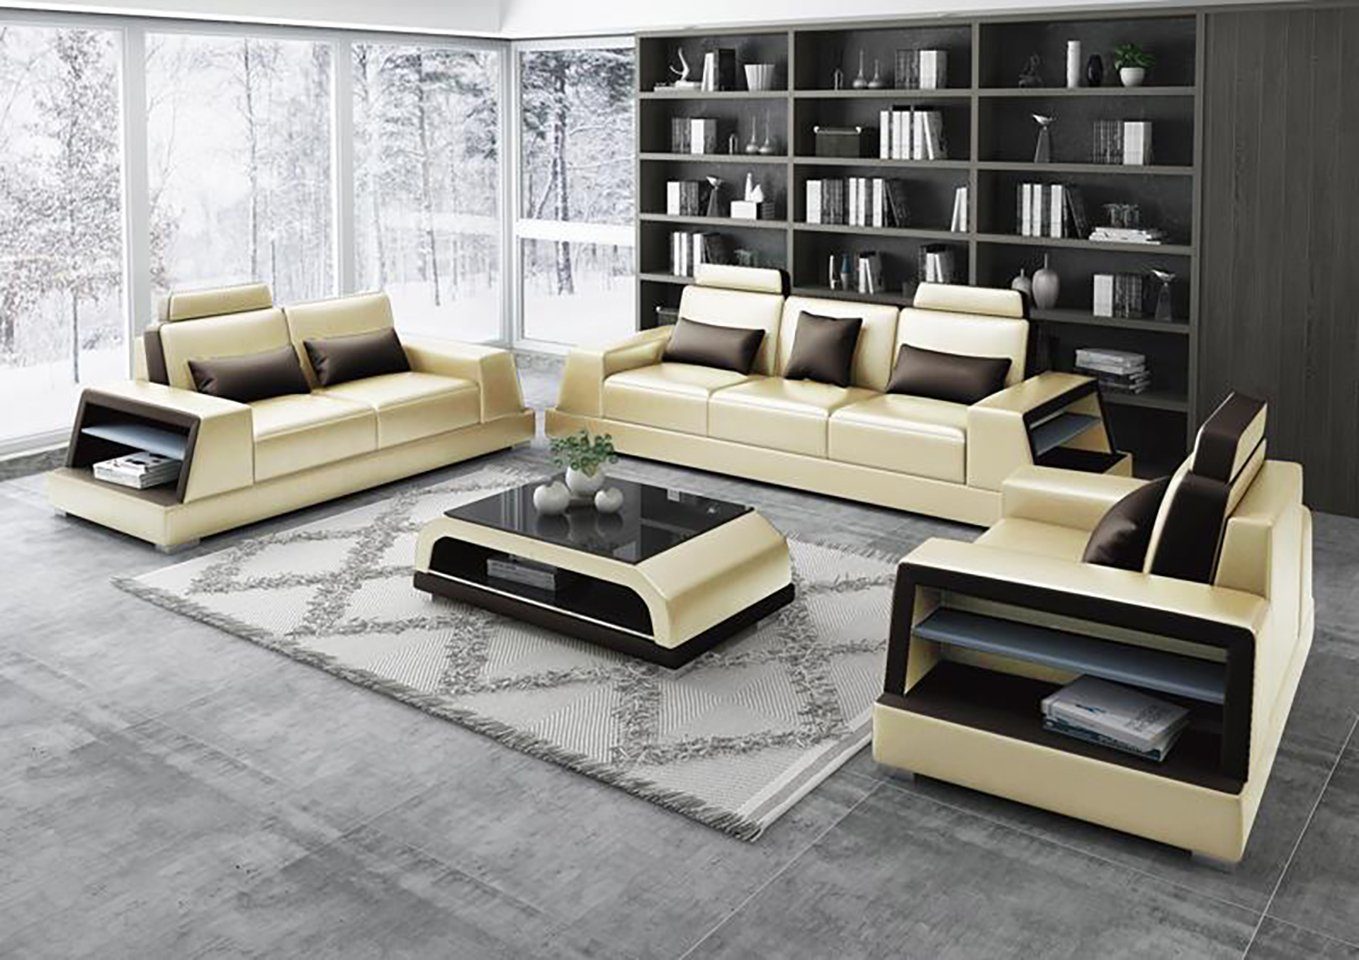 JVmoebel Sofa Wohnzimmer Beige Polster Sofagarnitur 3+2+2 Sitzer Modern Neu, Made in Europe